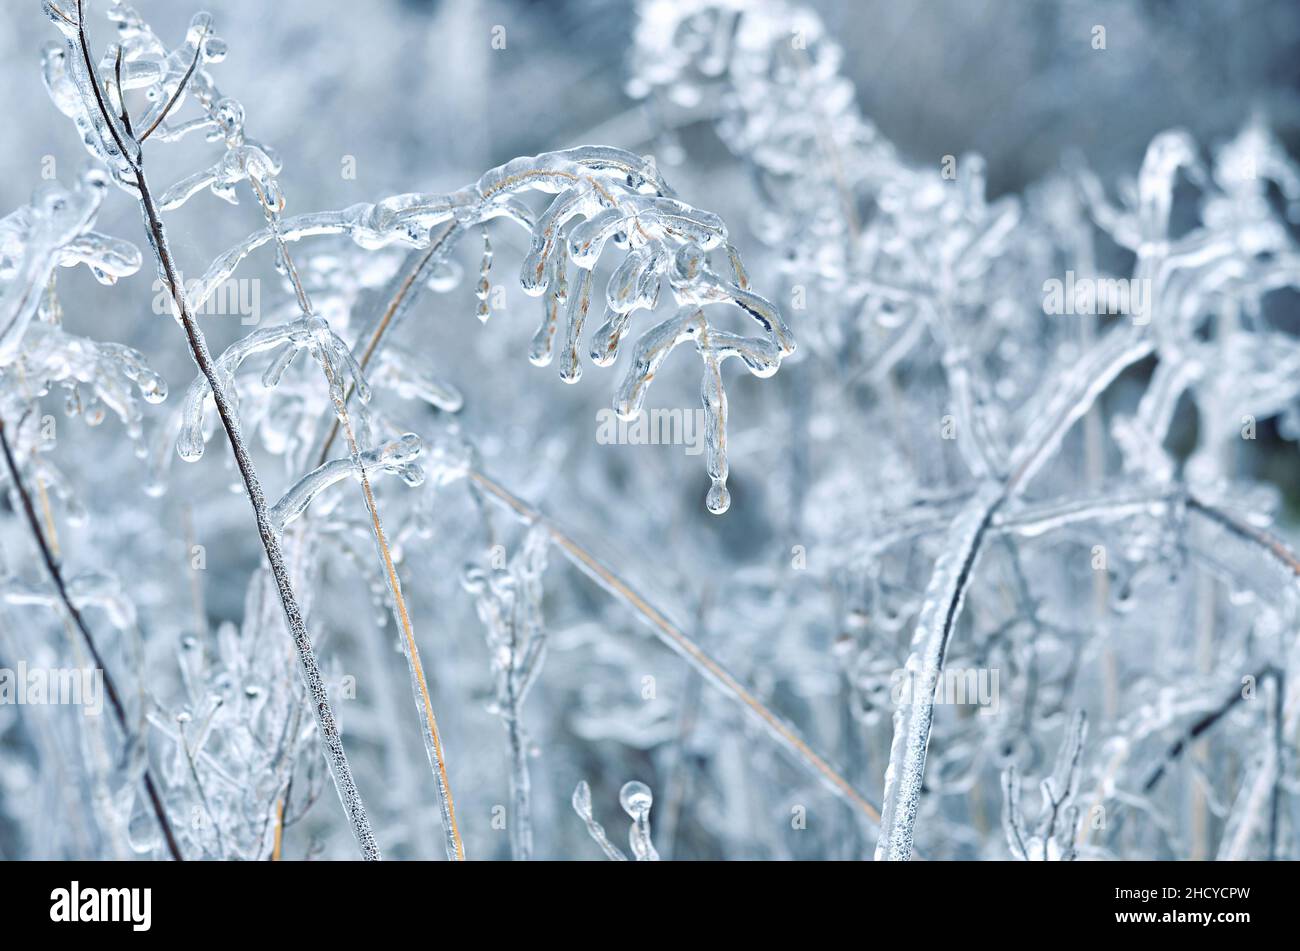 Detalle de una planta seca cubierta de hielo después de una tormenta de hielo de invierno. Efecto de la congelación atmosférica. Foto de stock